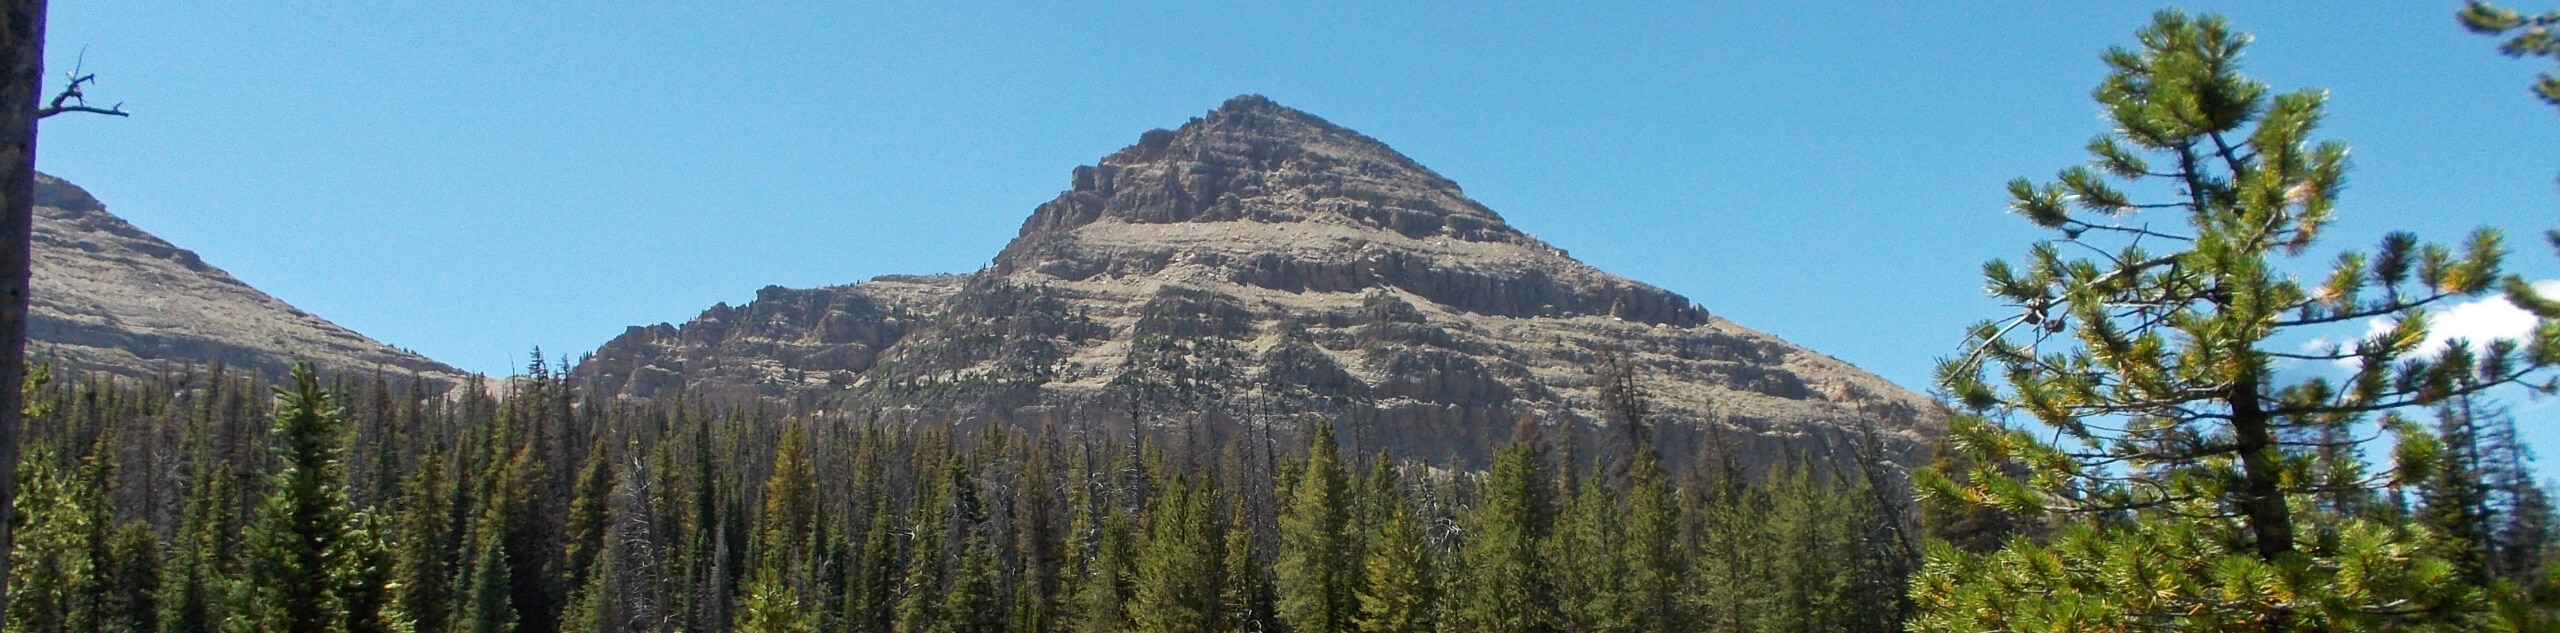 Reid’s Peak